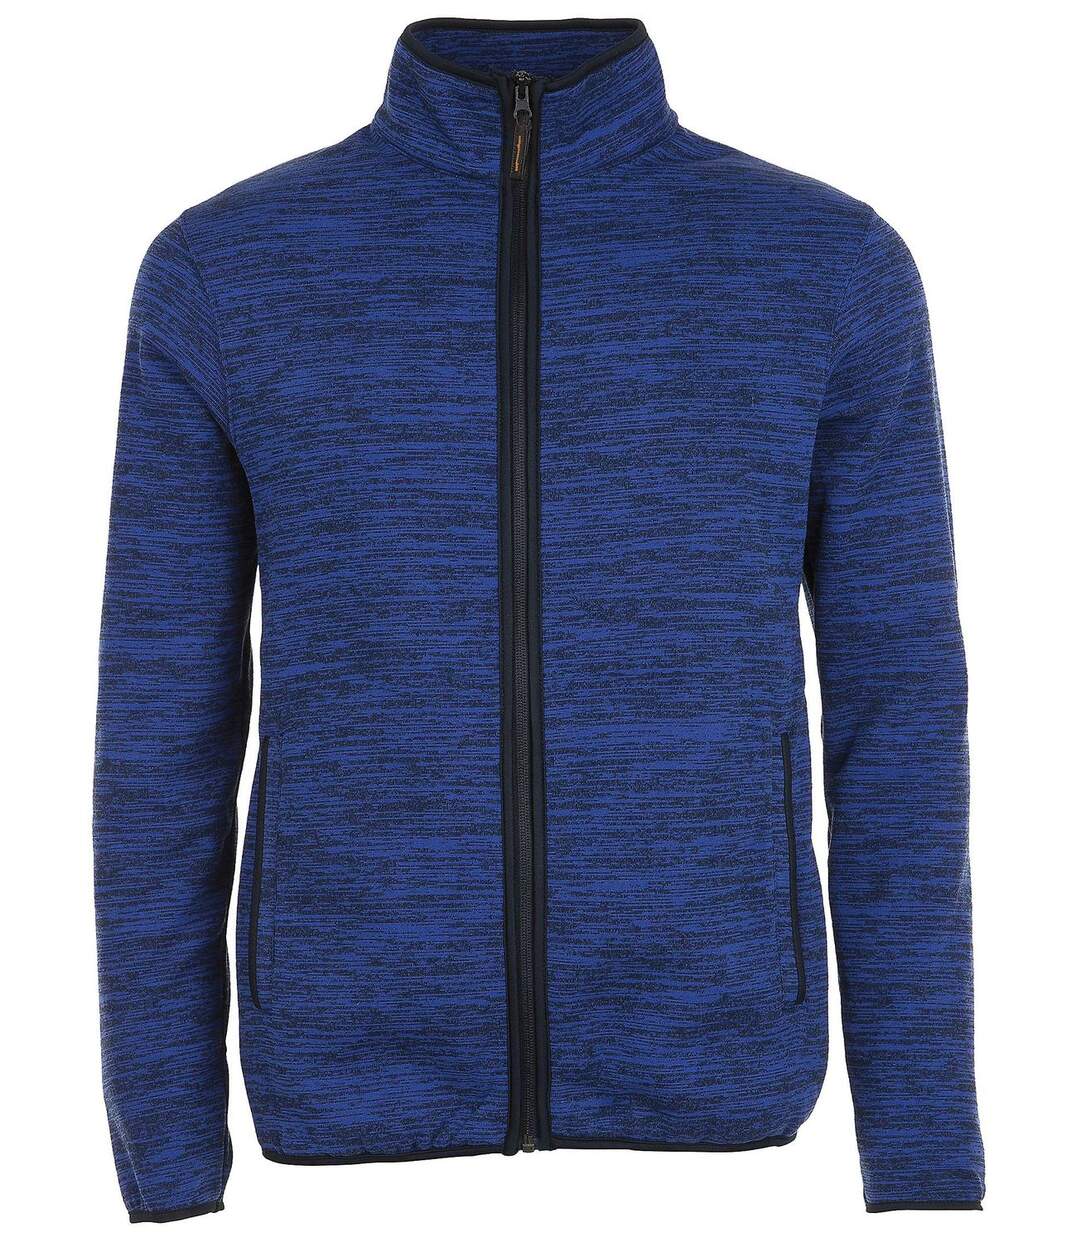 Veste tricot polaire unisexe - 01652 - bleu